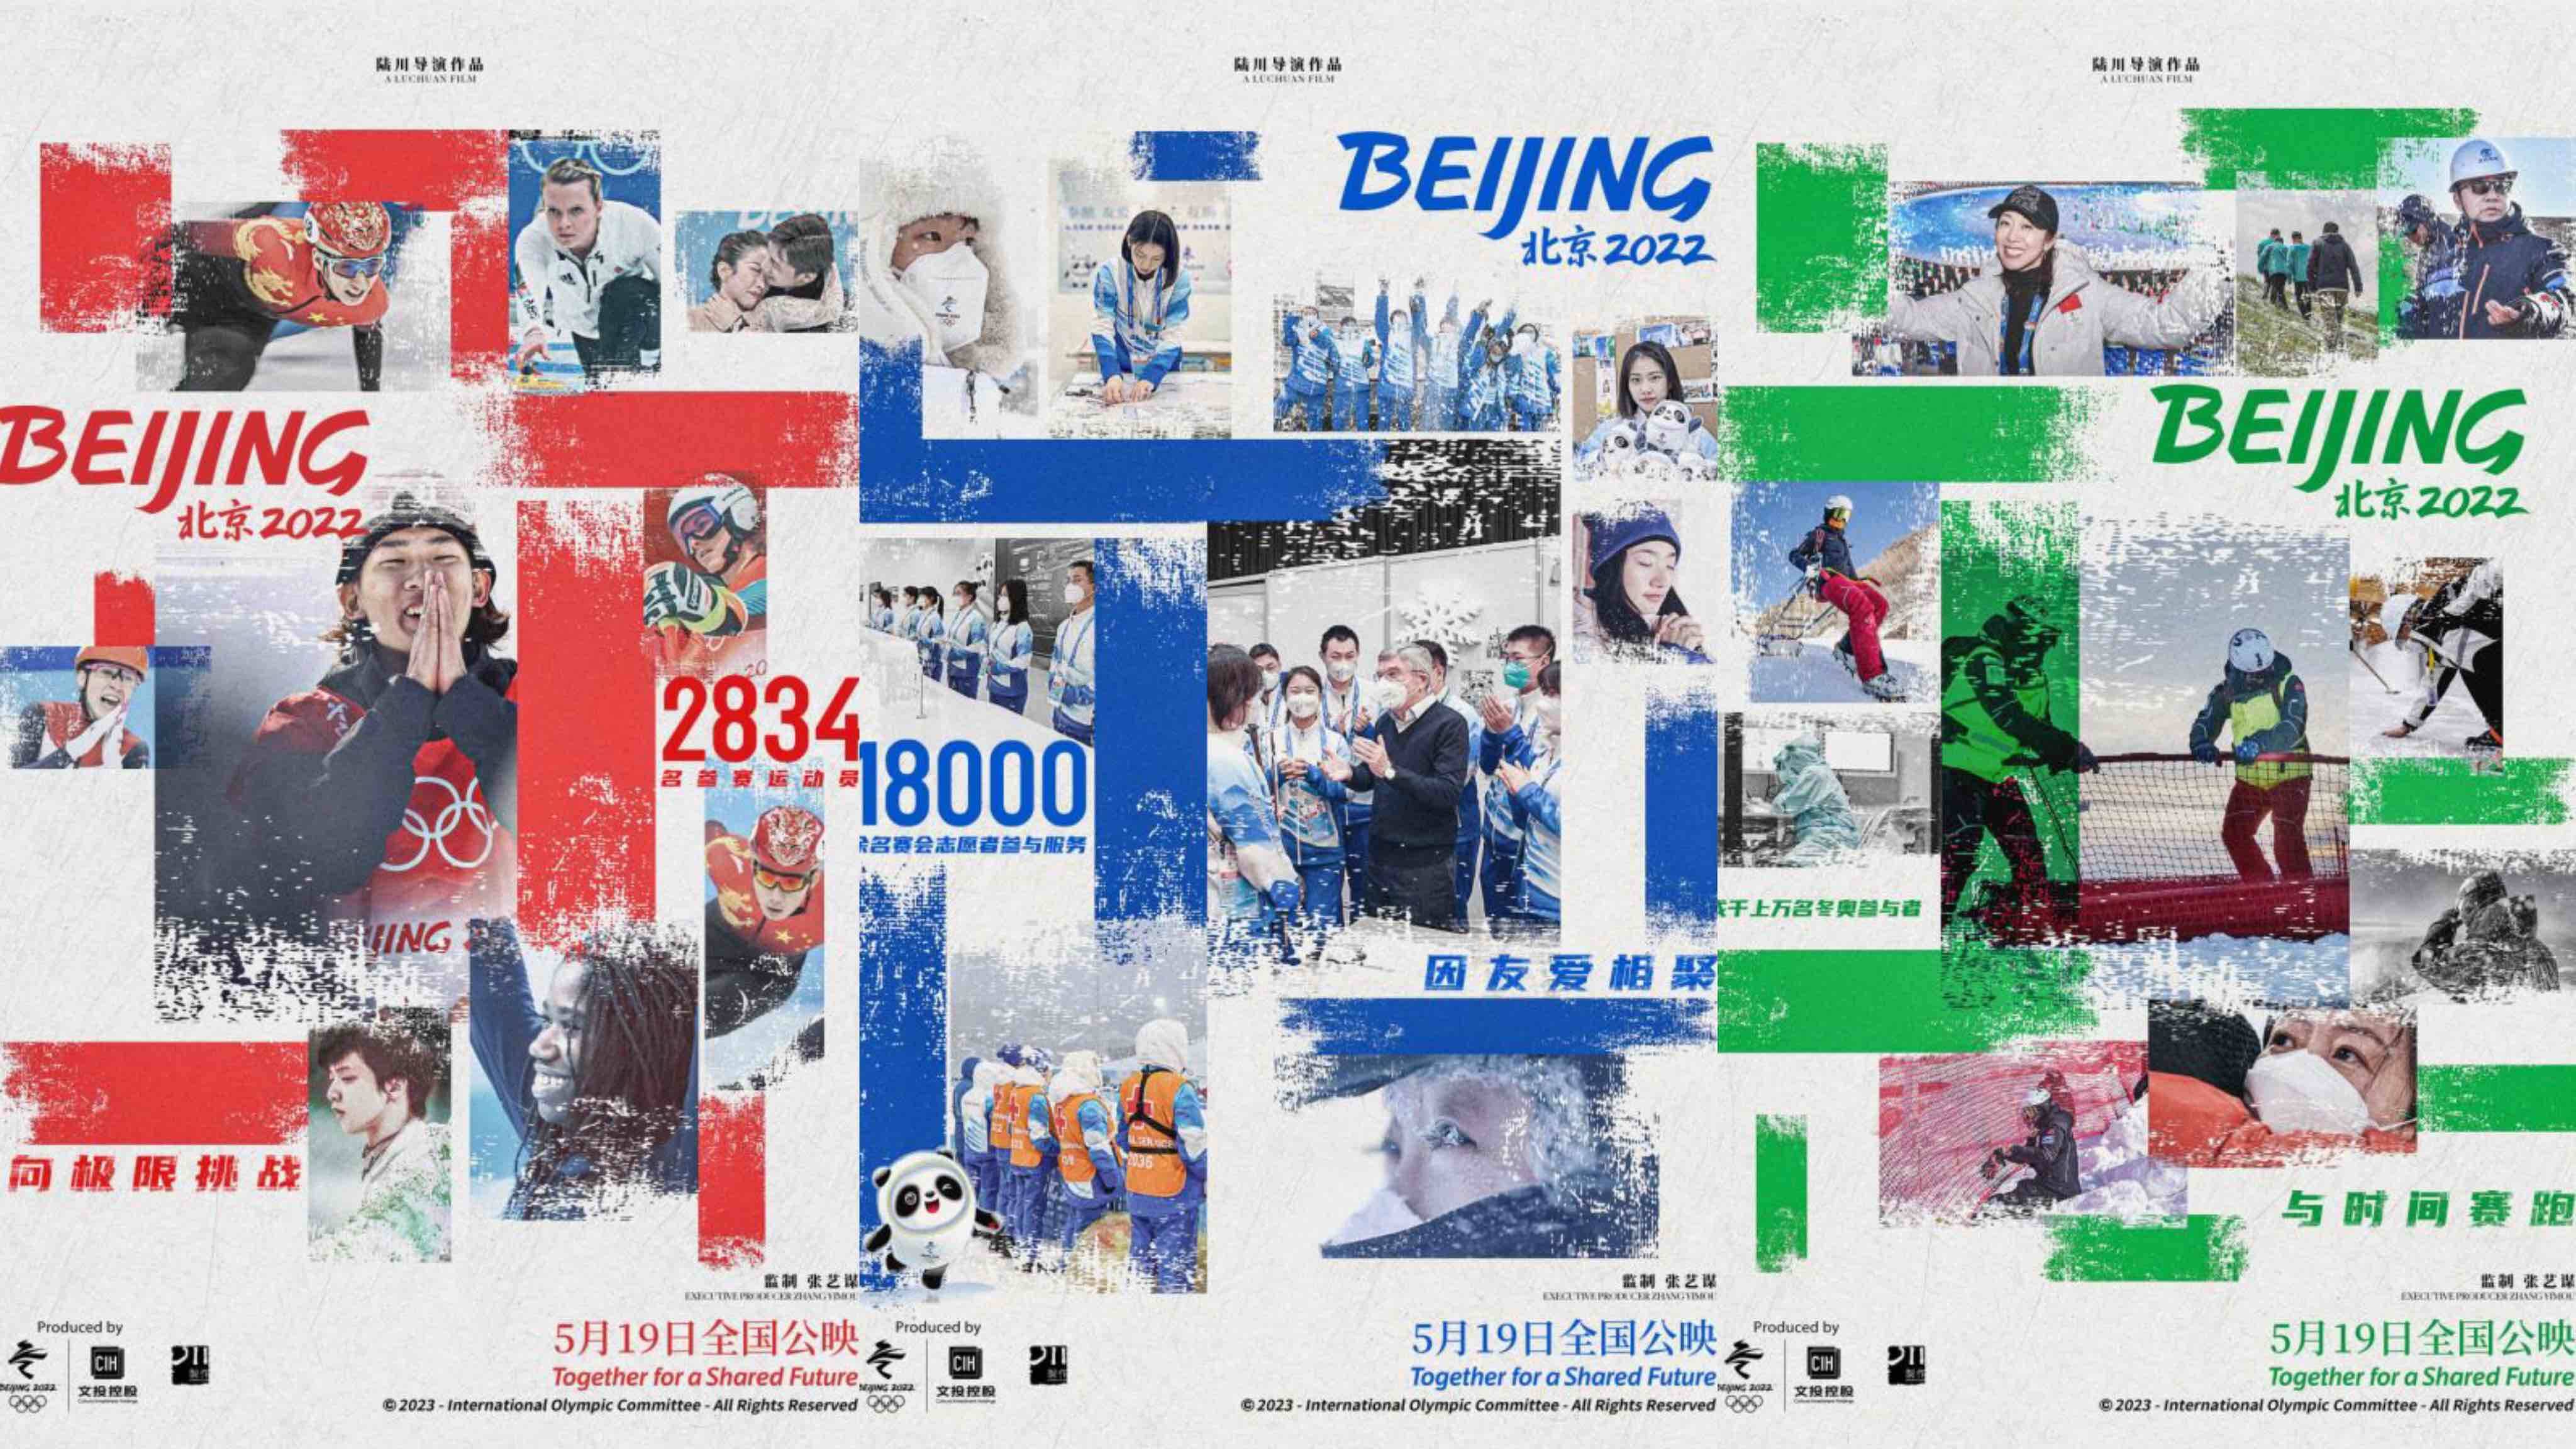 电影《北京2022》群像海报发布  展示冬奥人闪耀瞬间